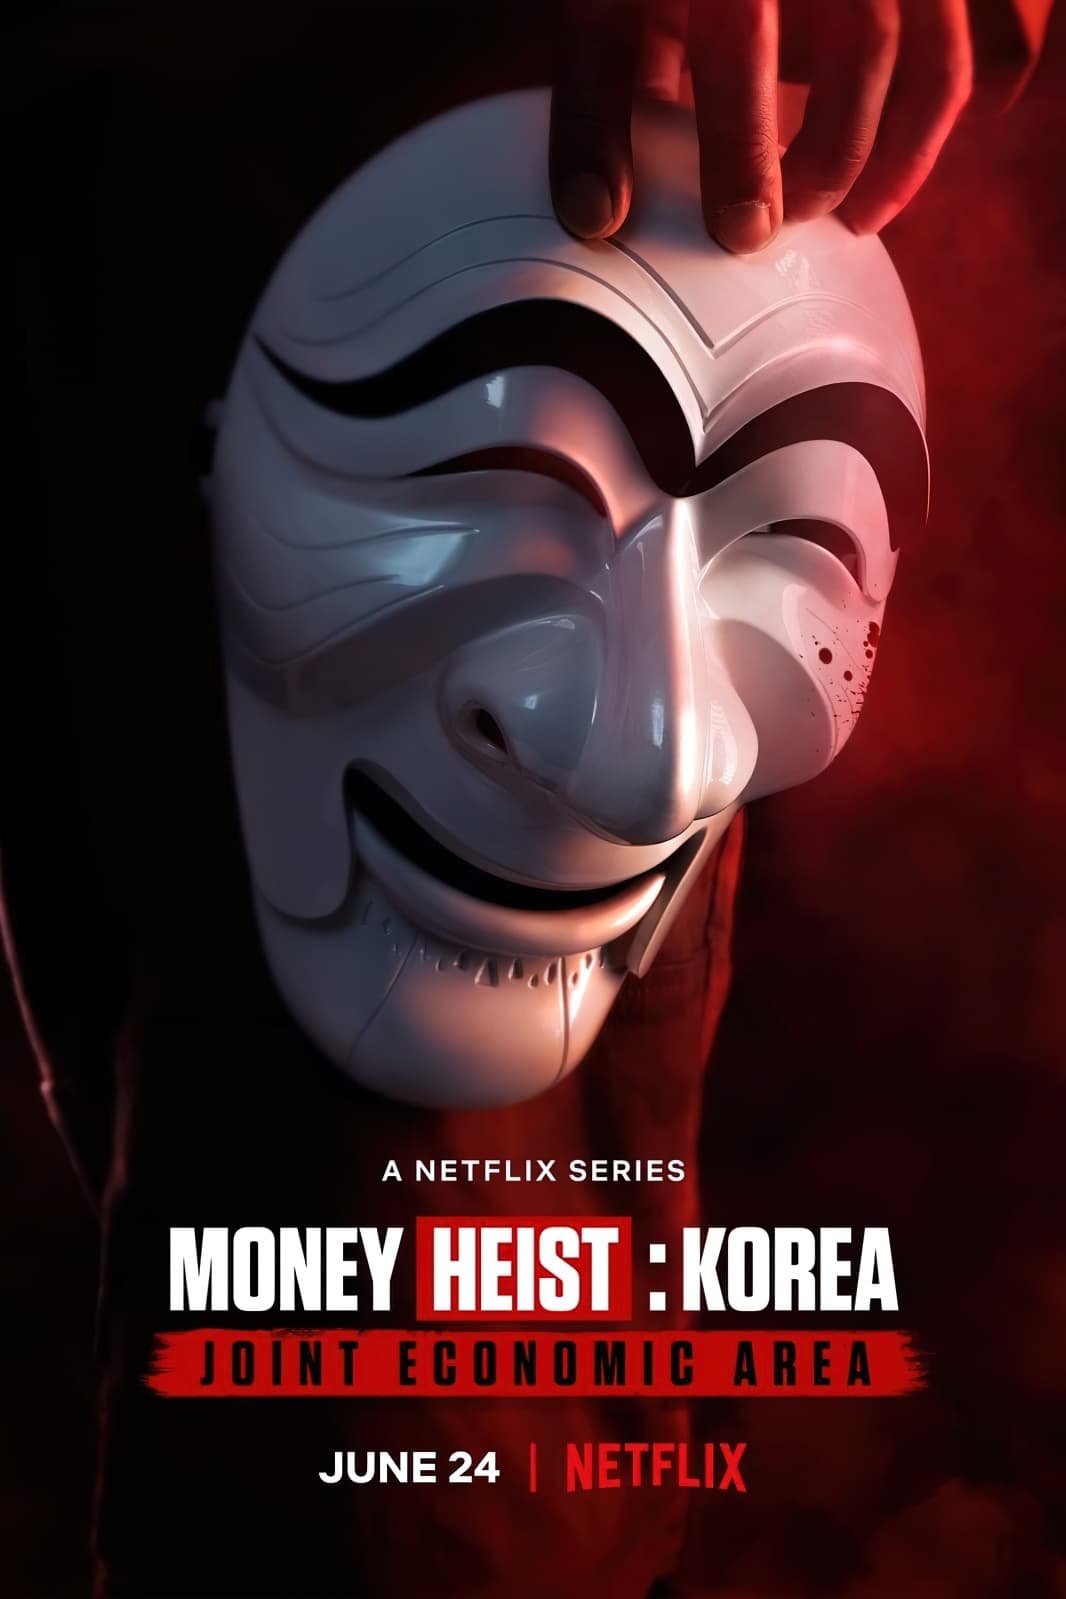 ดูหนังออนไลน์ Money Heist : Korea Joint Economic Area ทรชนคนปล้นโลก เกาหลีเดือด